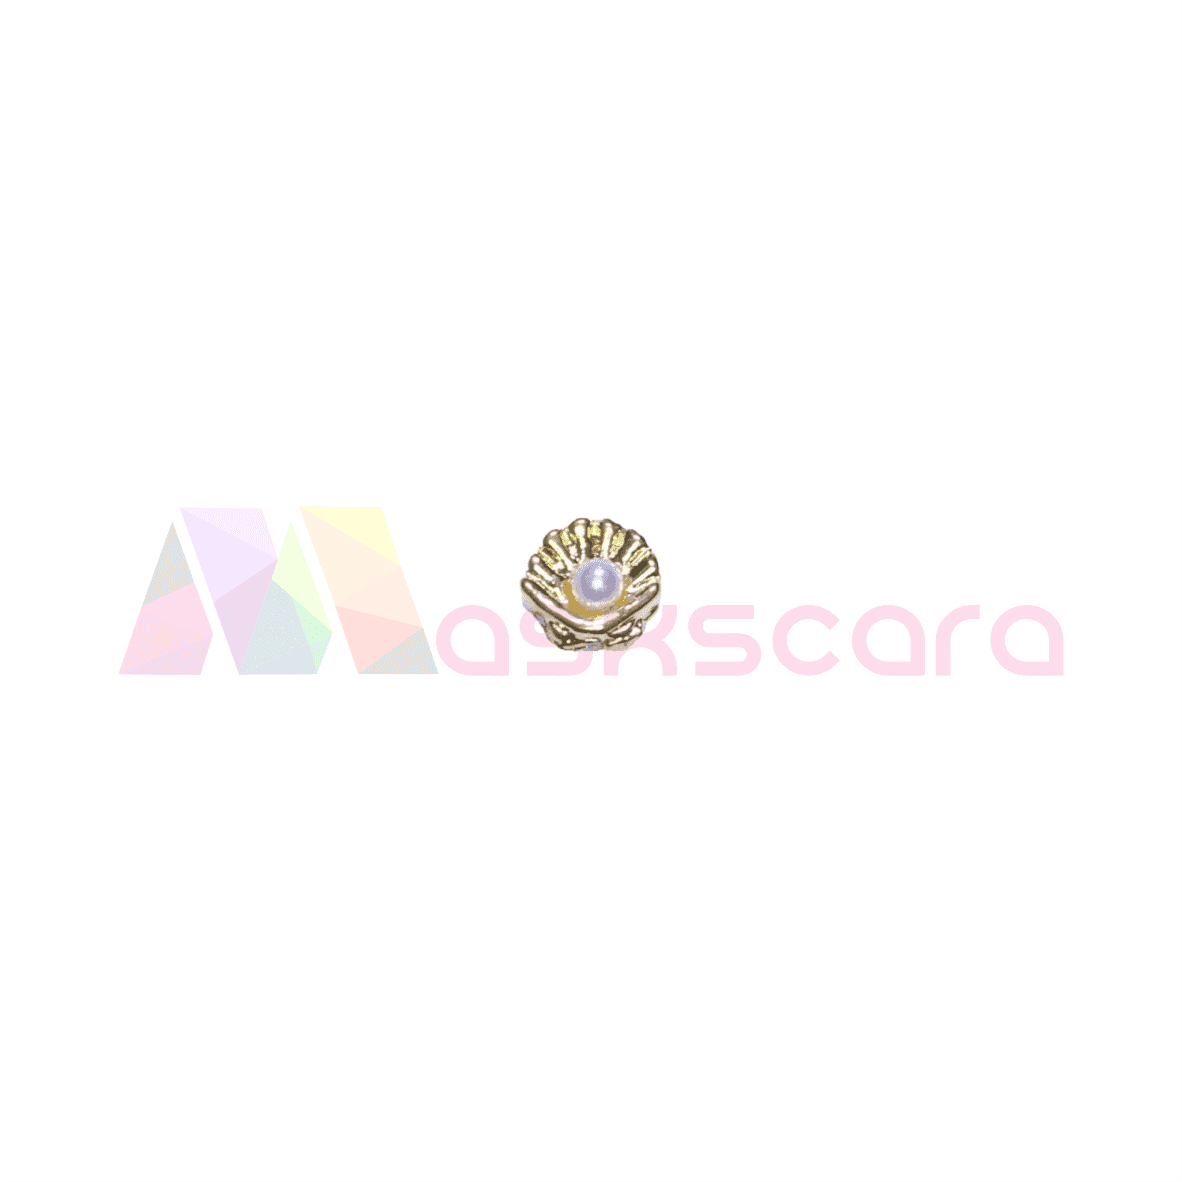 Gold Shell with Pearl Gems (5 Pcs) - Maskscara